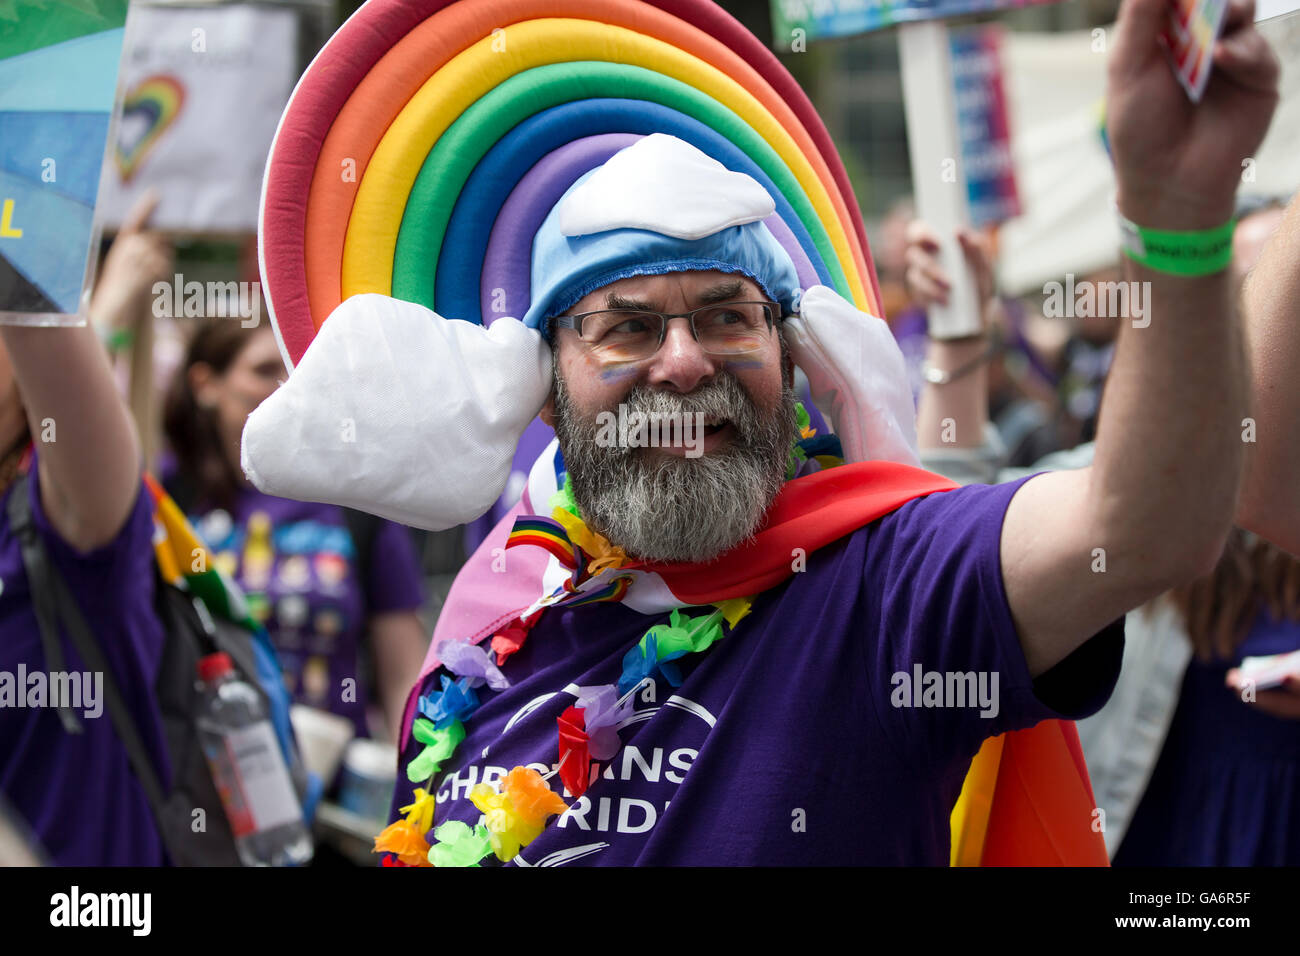 Participante en el desfile del orgullo gay de Londres en Portland Place, Londres W1, Inglaterra, Reino Unido. Foto de stock